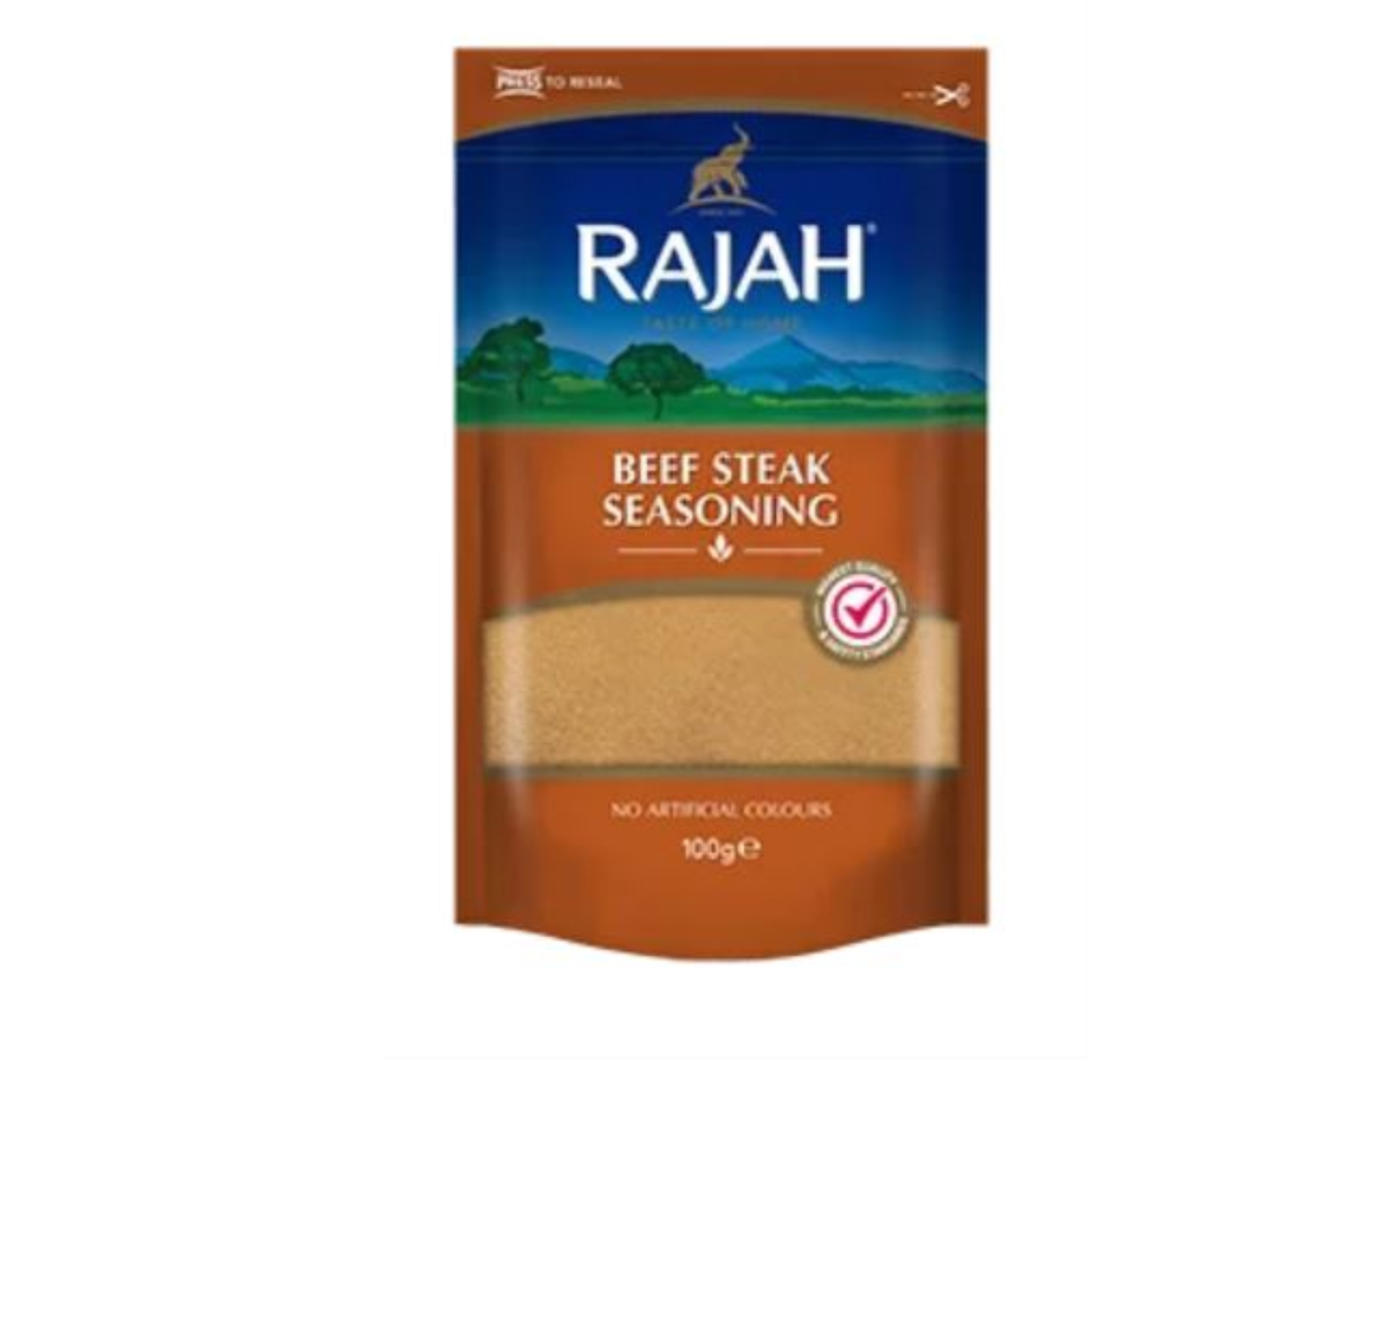 Rajah Beef Steak Seasoning